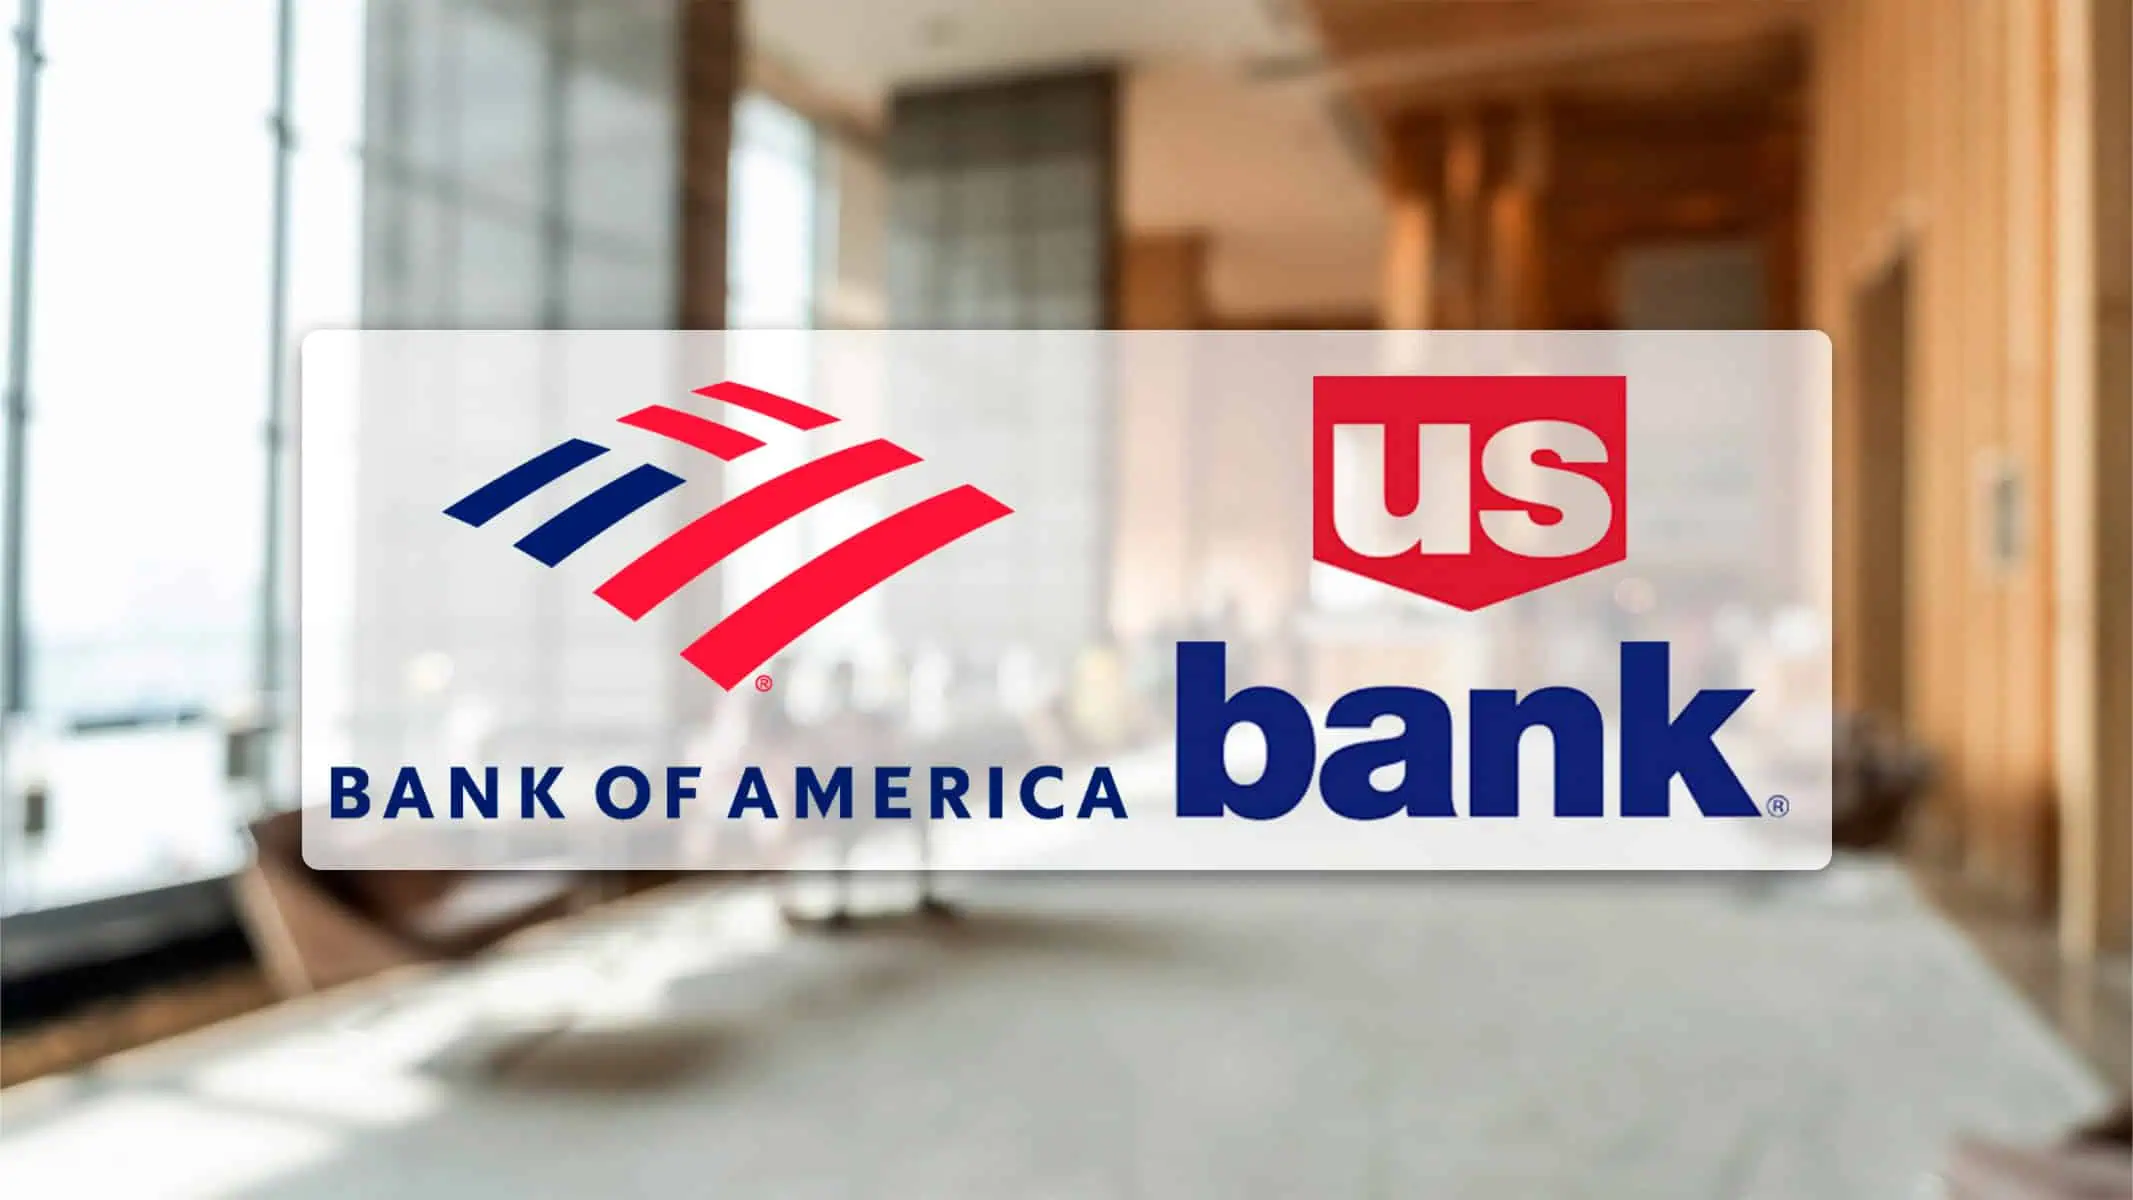 Bank of America y US Bank Continúan Cerrando Sucursales: ¿Eres Uno de los Afectados?